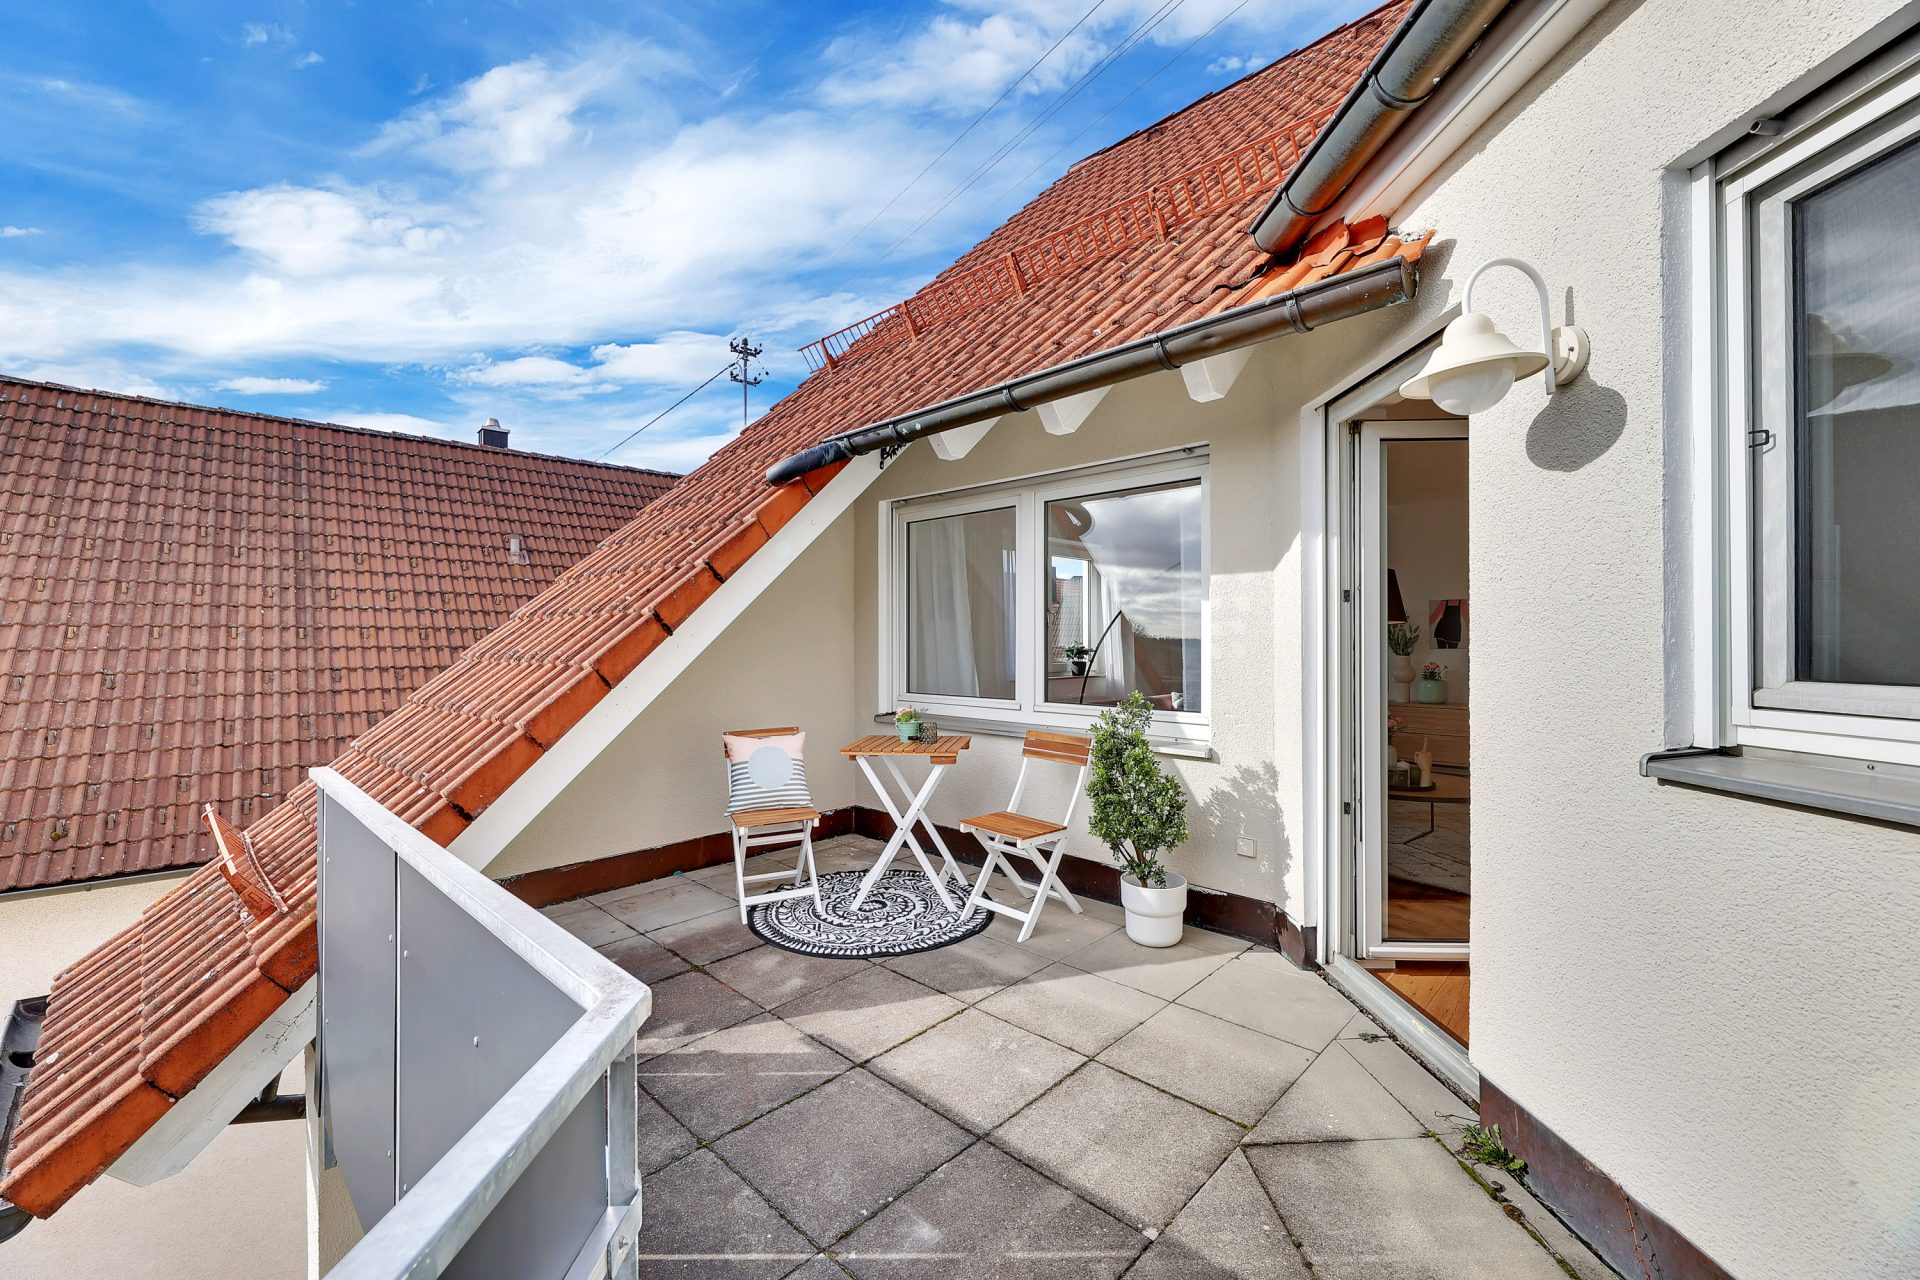 Immobilienvermarktung verbessern mit hochwertigen Fotos © Offenblende.de